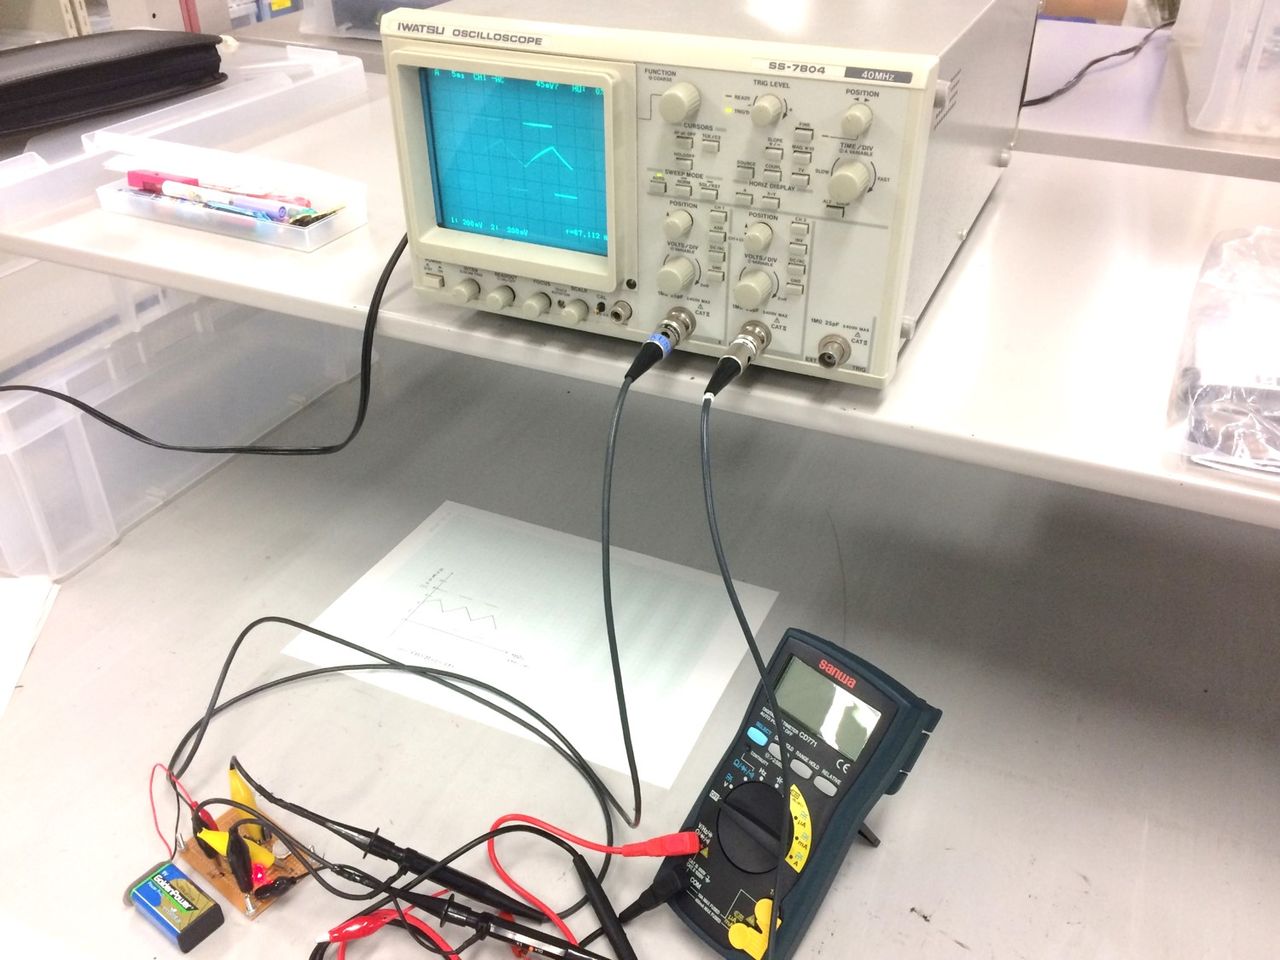 電子システム工学科のワークショップで行った発振回路 光センサーの測定 プラズマ物性研究室ブログ 東京電機大学電子システム工学科